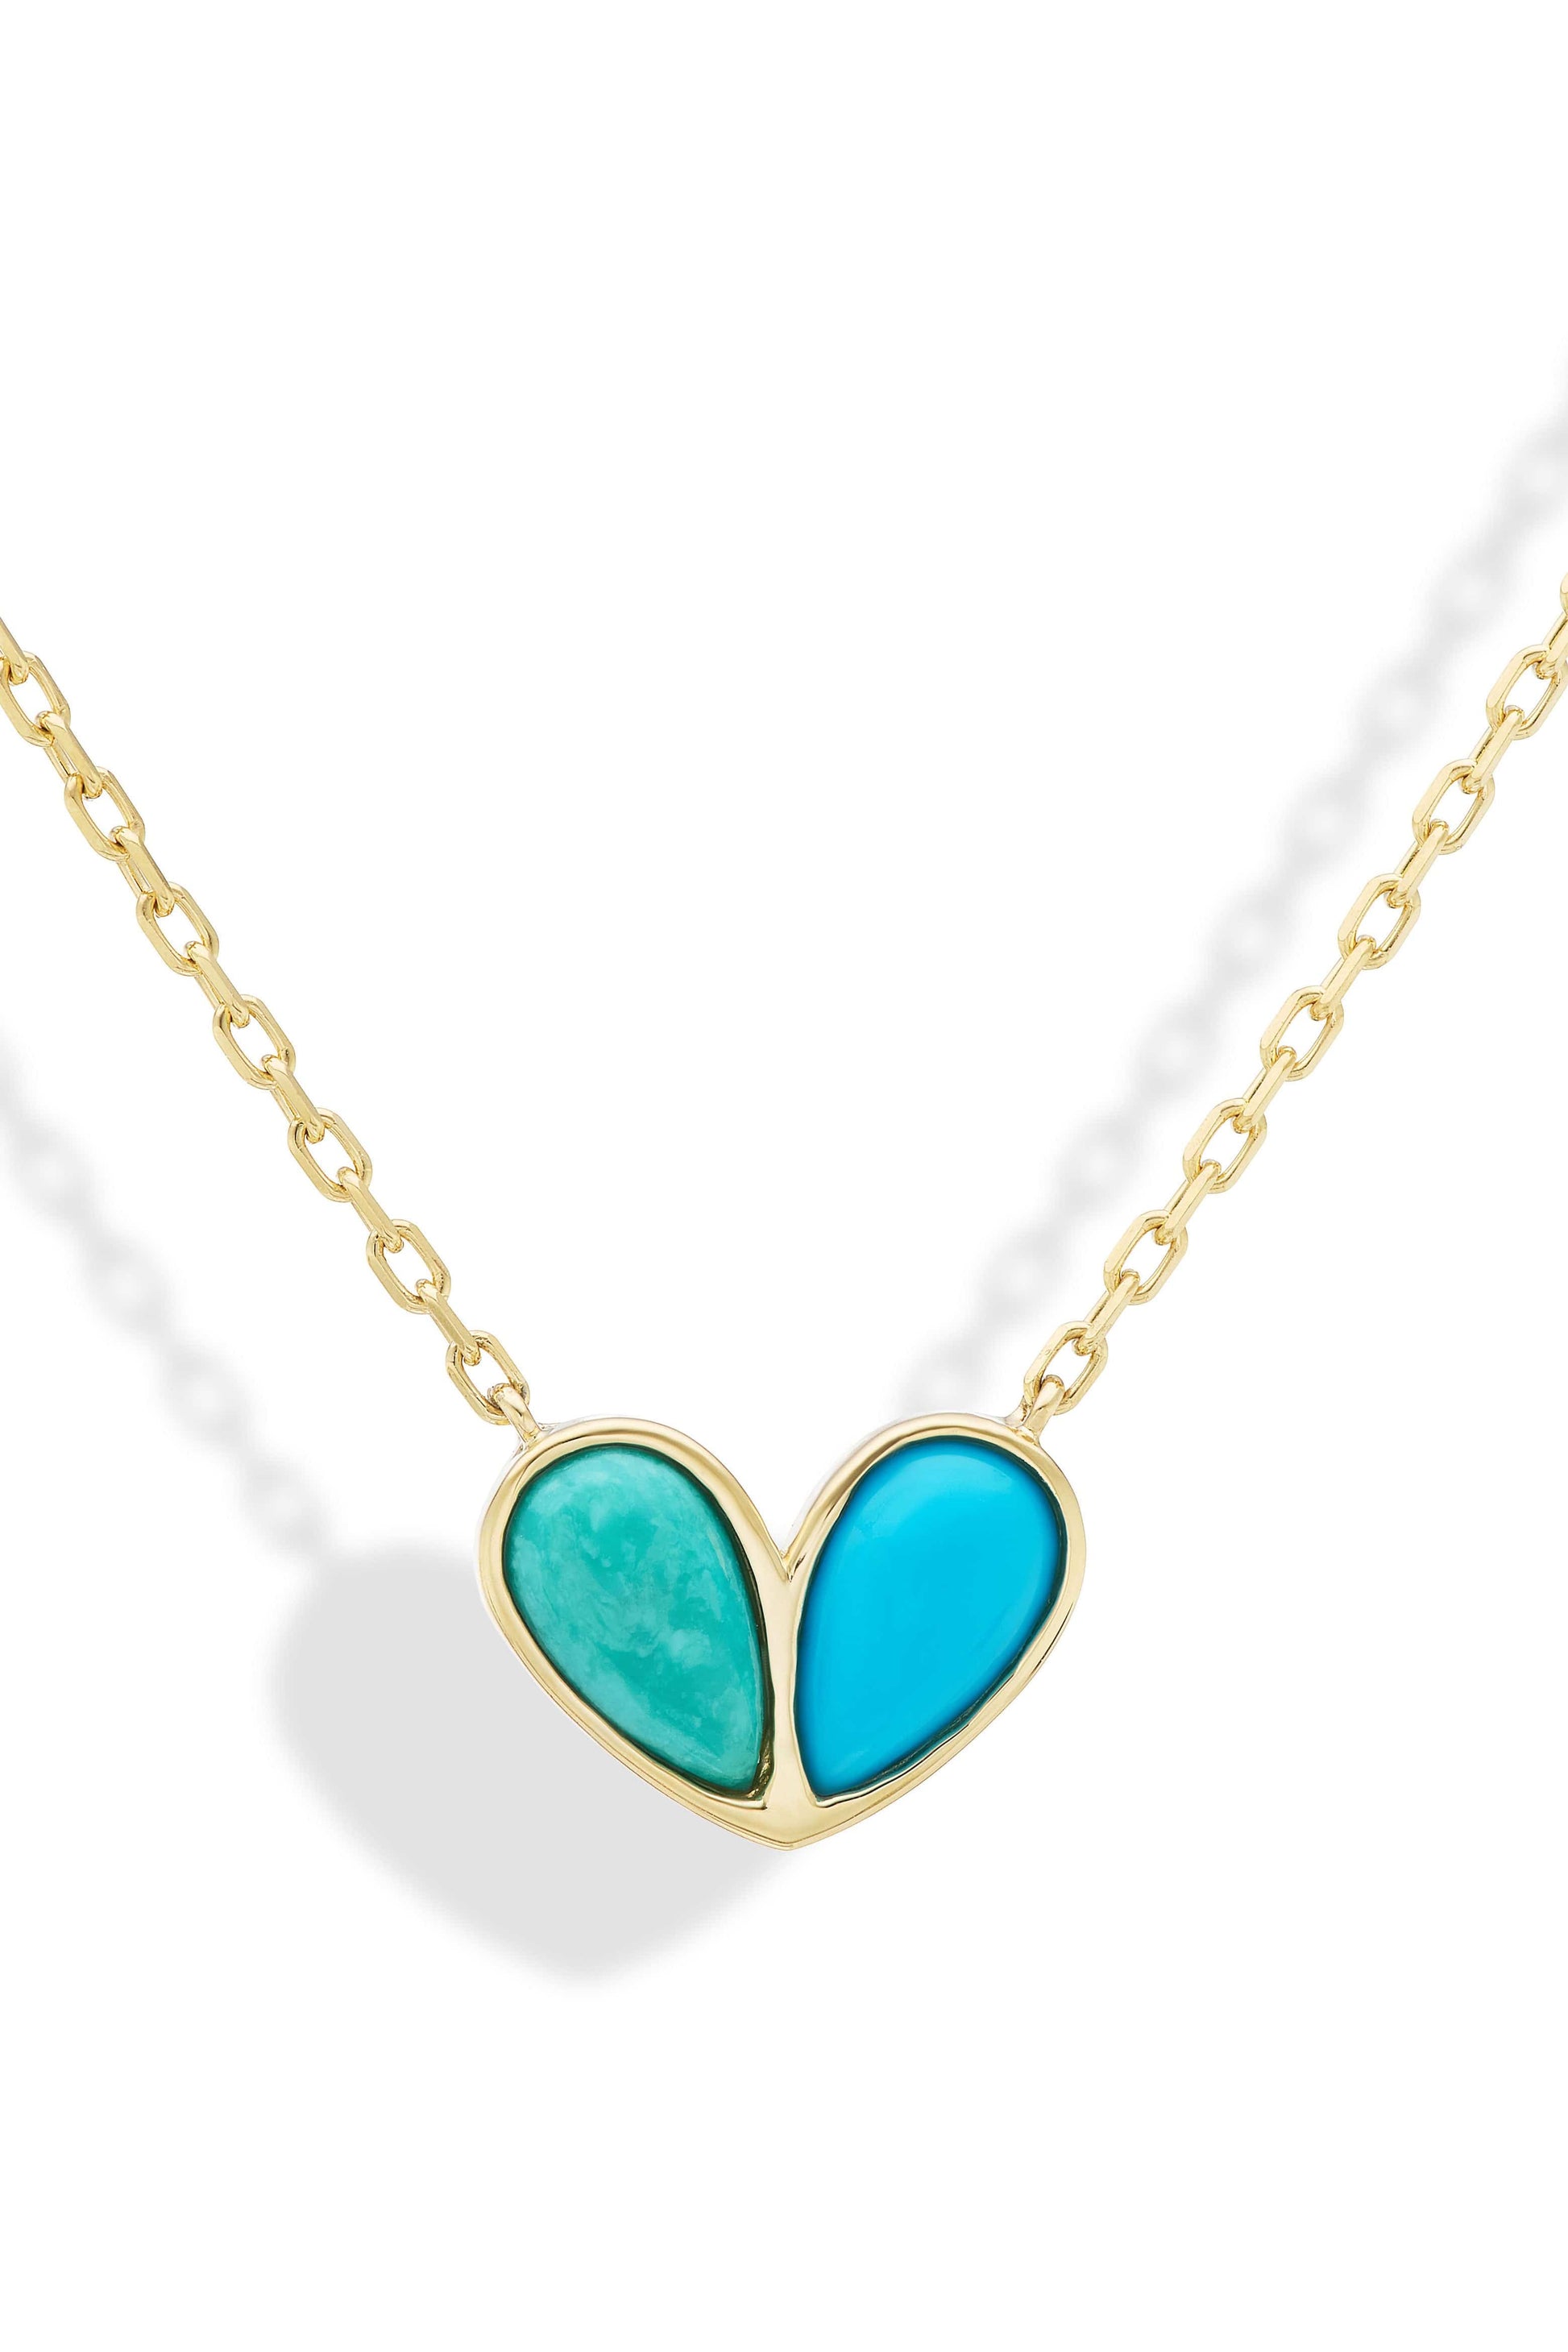 GEMELLA JEWELS-Jumbo Turquoise Sweetheart Necklace-YELLOW GOLD